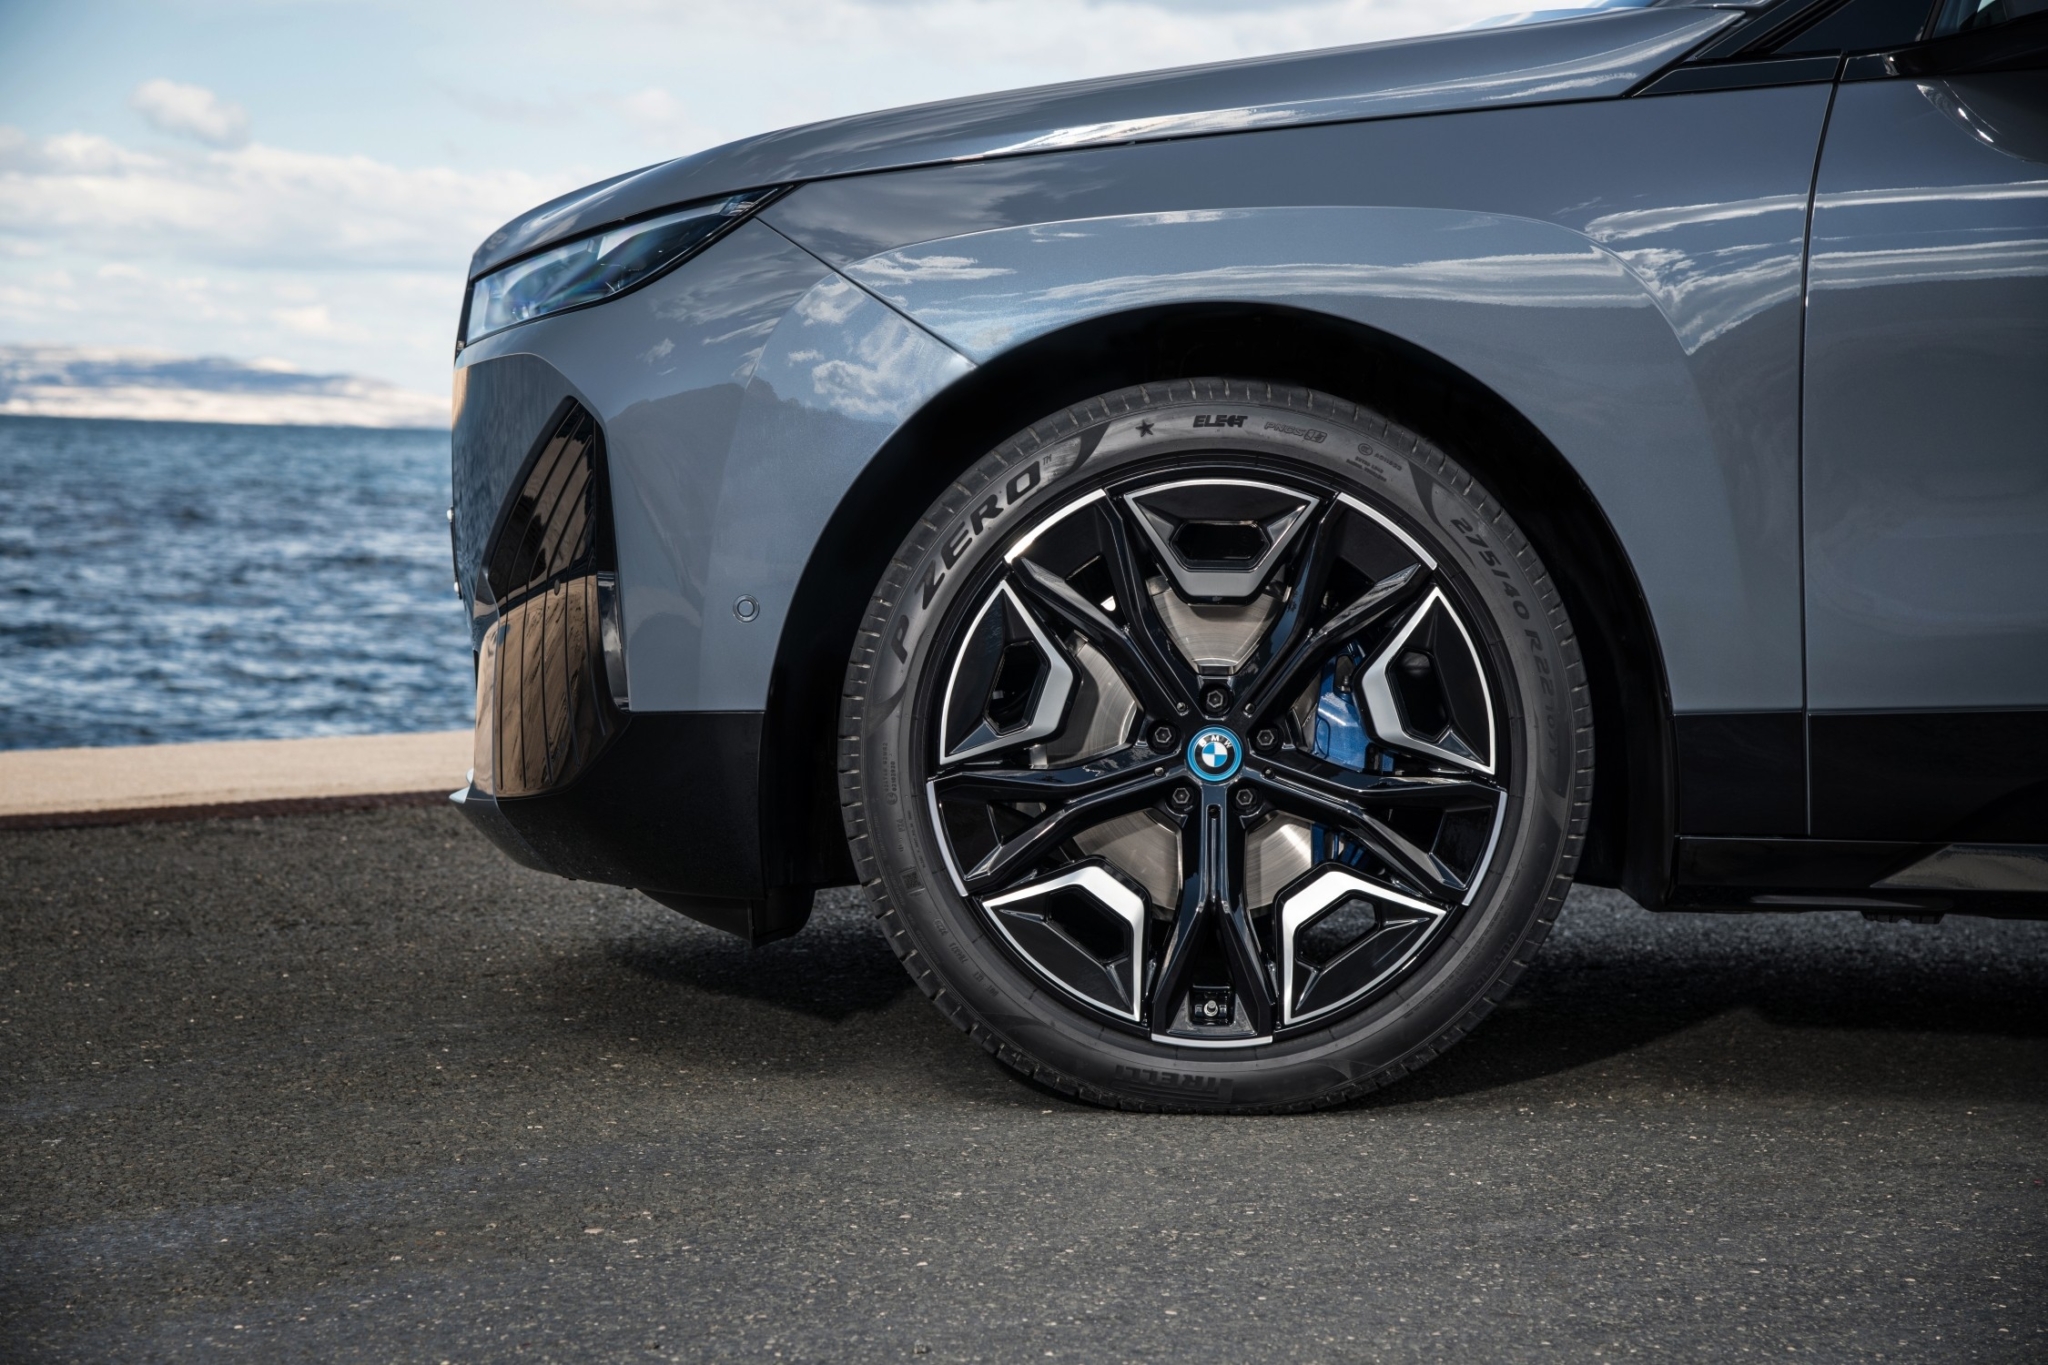 Pirelli supplies P Zero Elect tyres for BMW’s iX EV